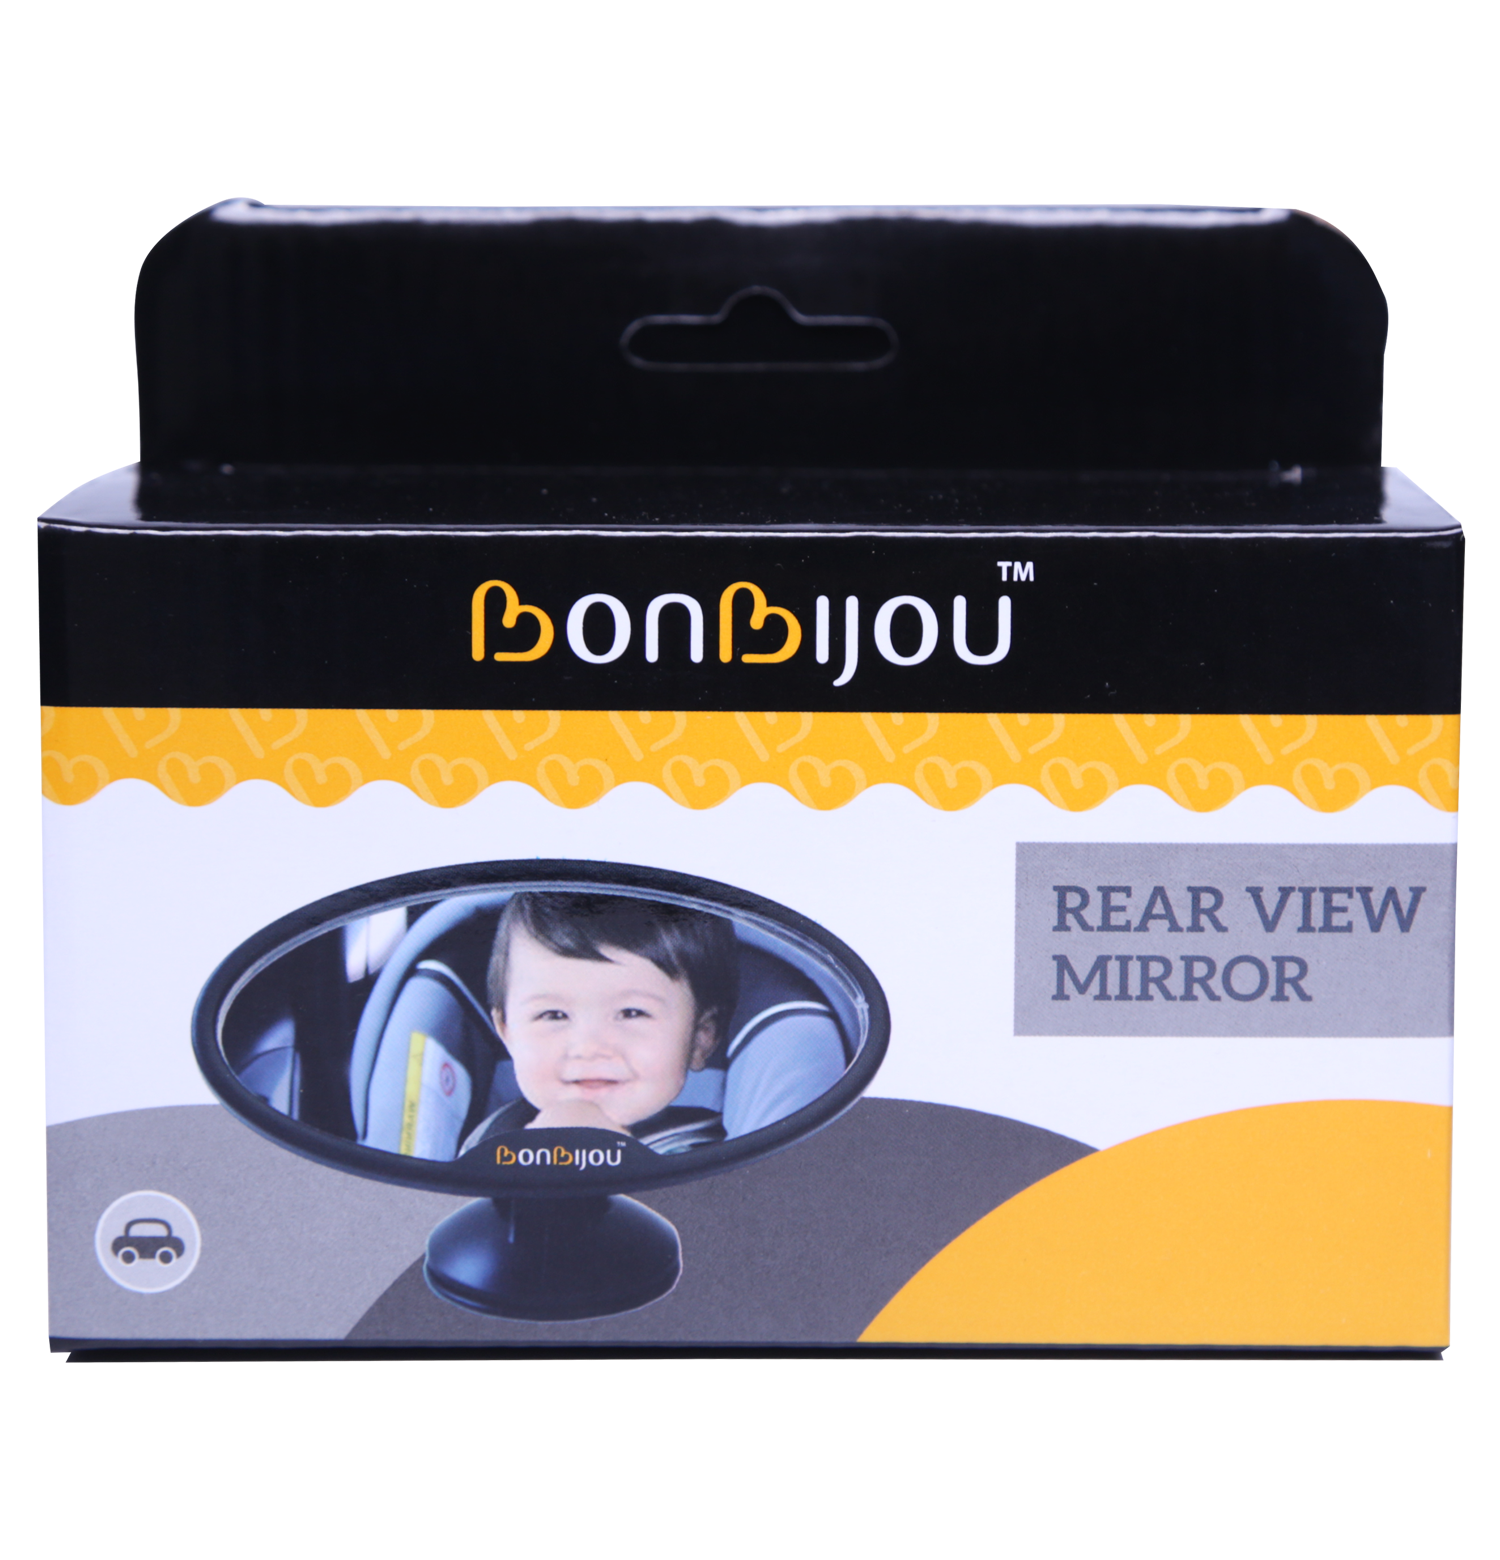 Bonbijou Rear View Mirror - Bonbijou